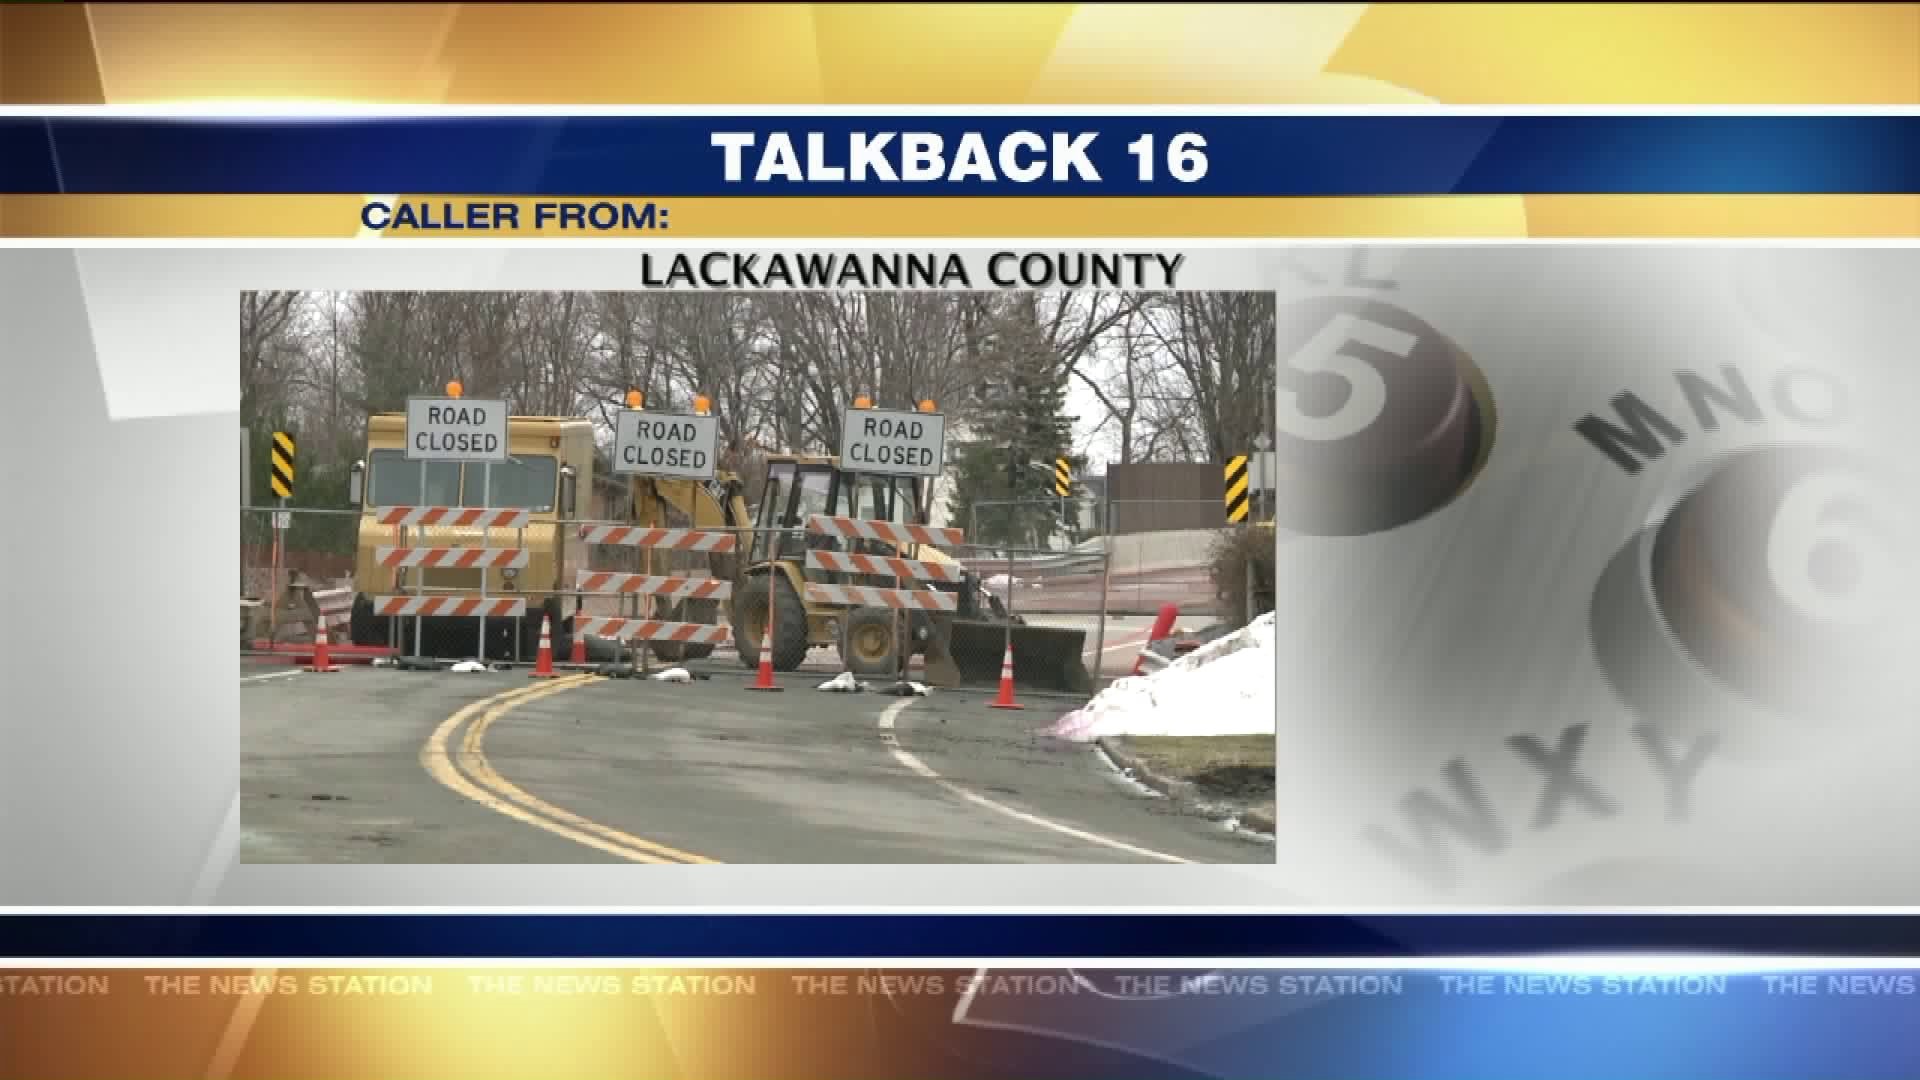 Talkback 16: Ignoring Road Closed Signs, Light-up Cross